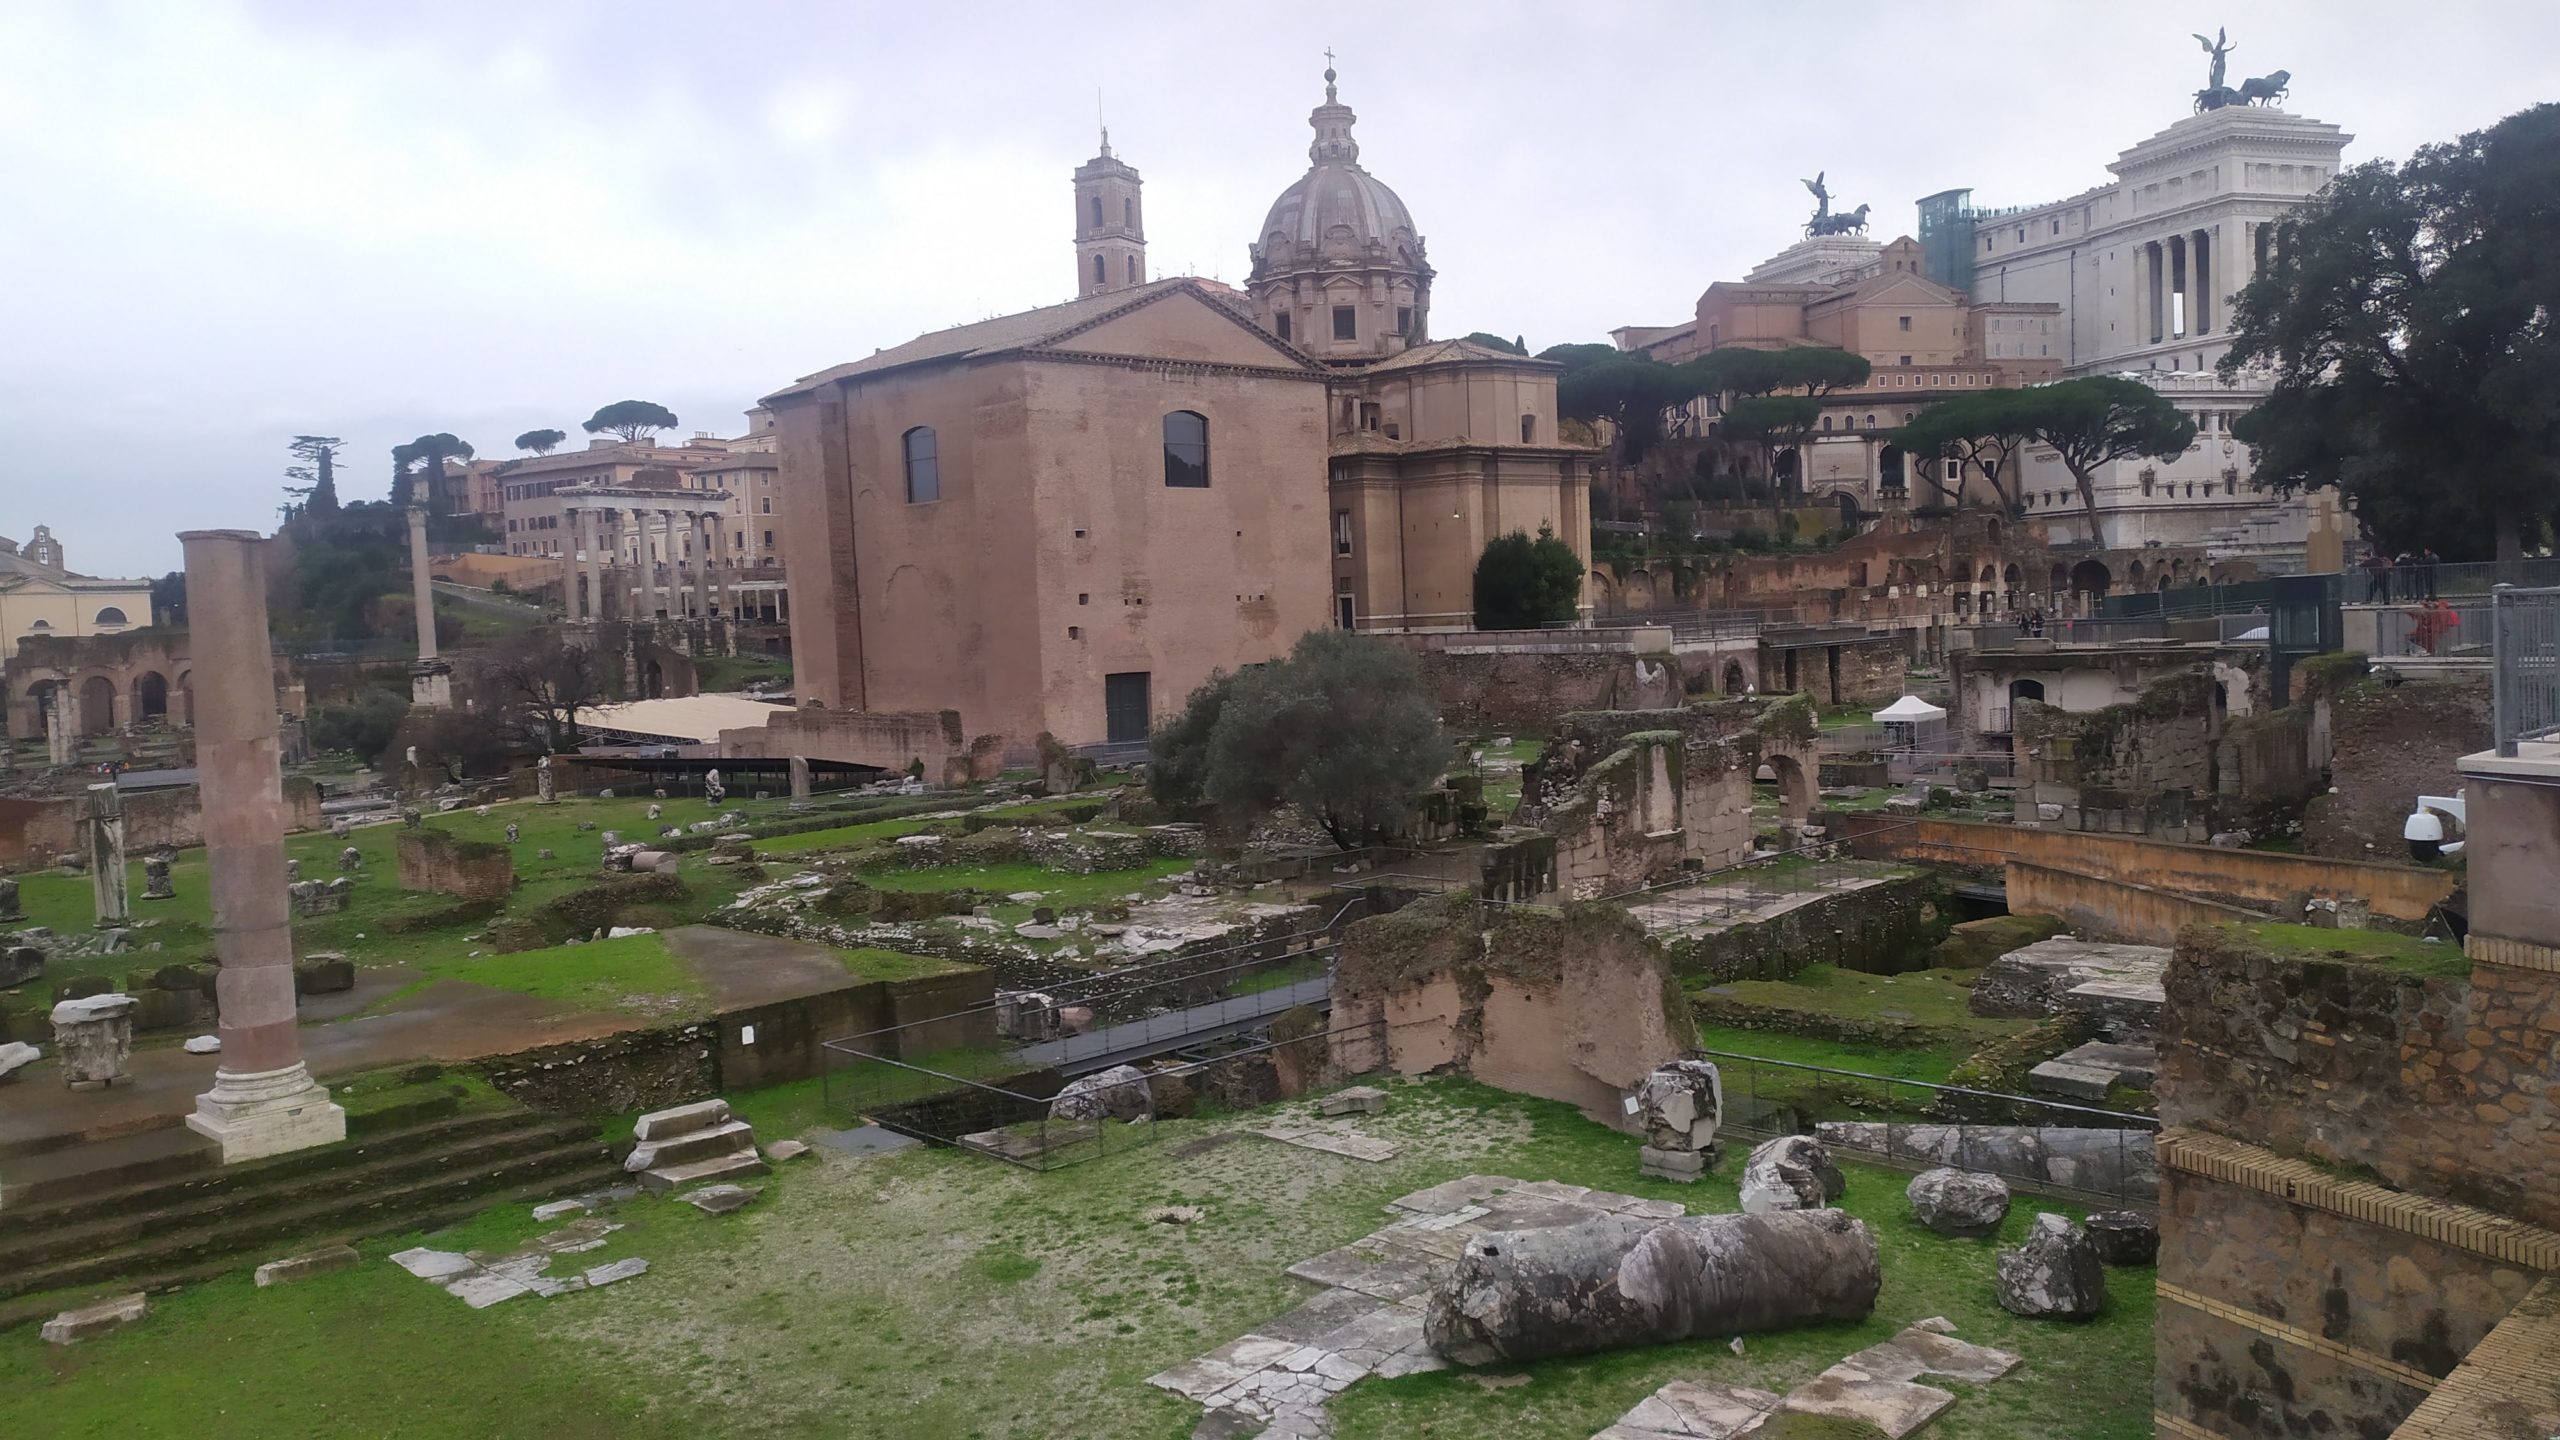 Les ruines dans la ville de Rome sont omniprésentes